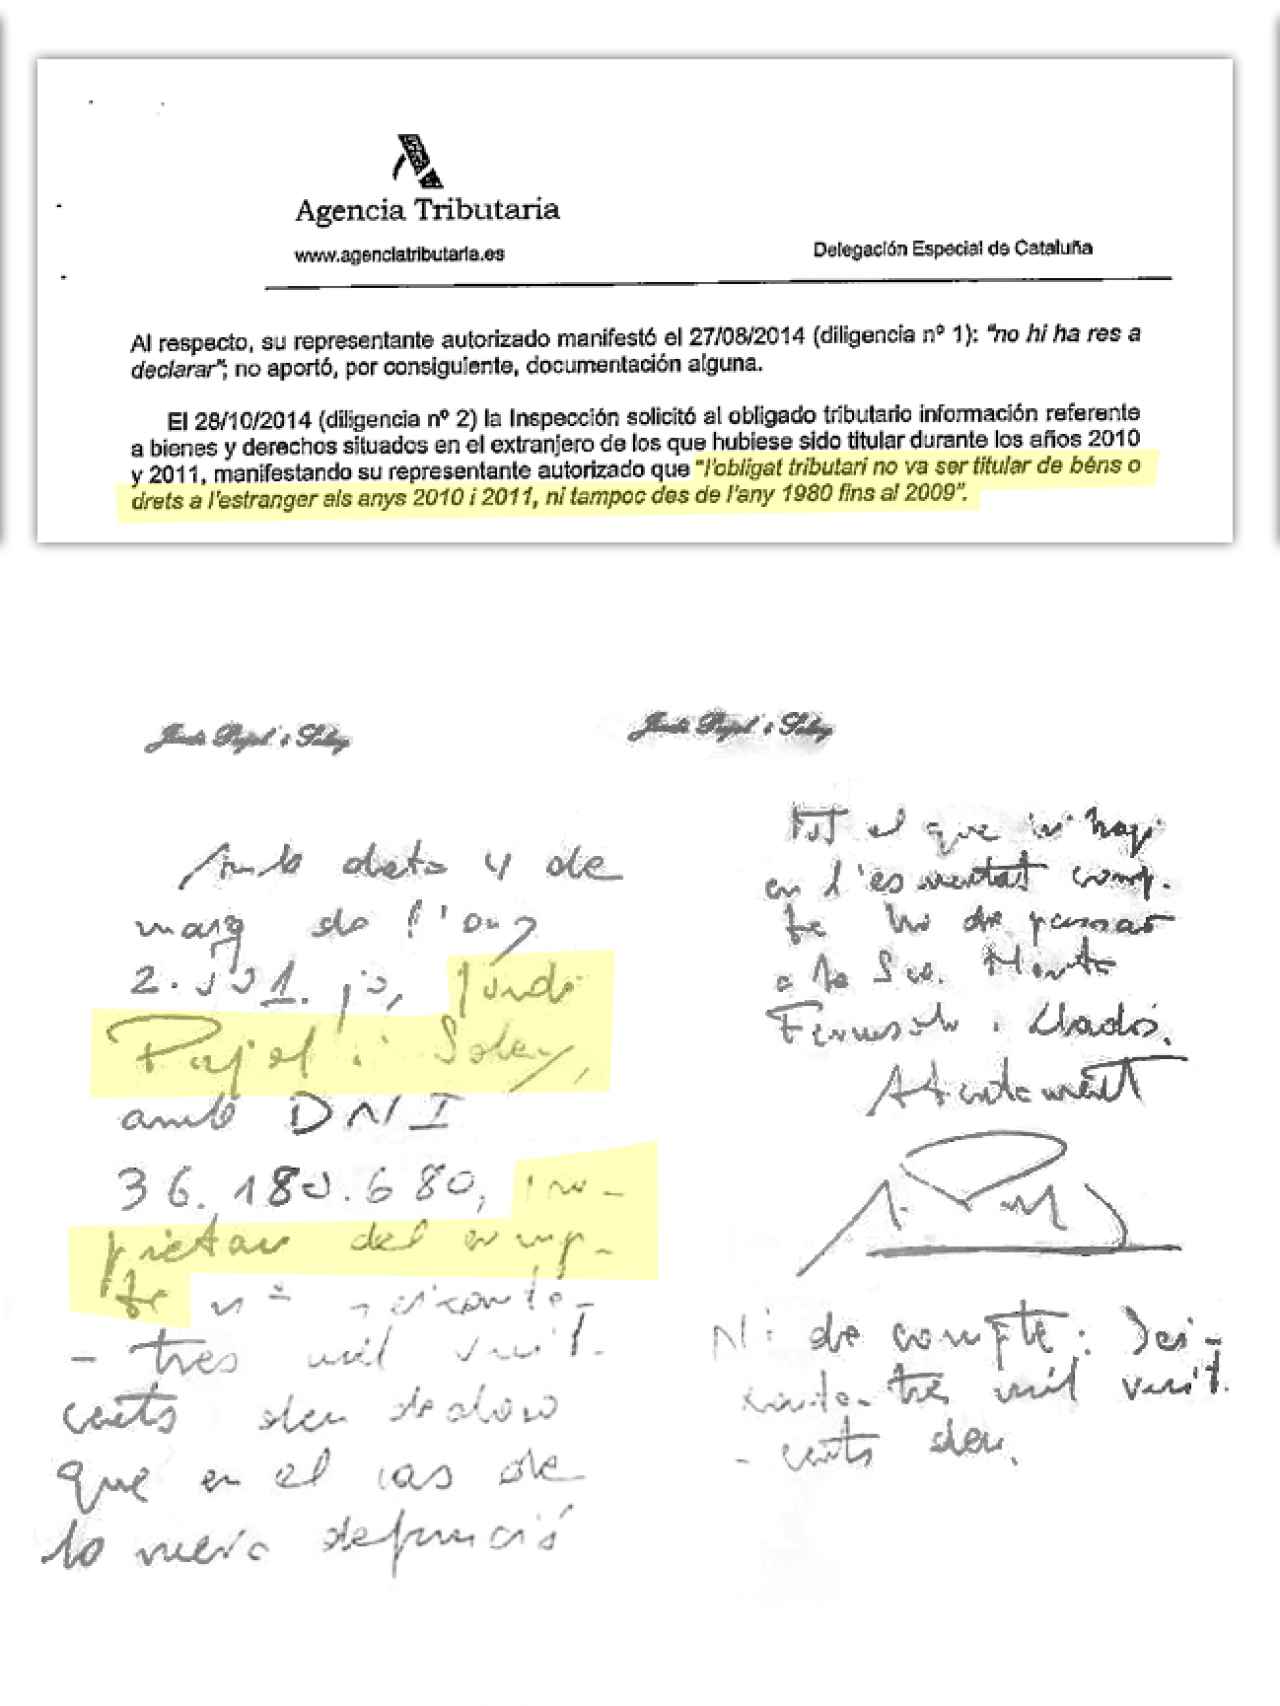 Arriba, el documento de Hacienda donde el expresident niega tener cuentas en el extranjero. Debajo, el manuscrito del Andbank donde se reconoce dueño.